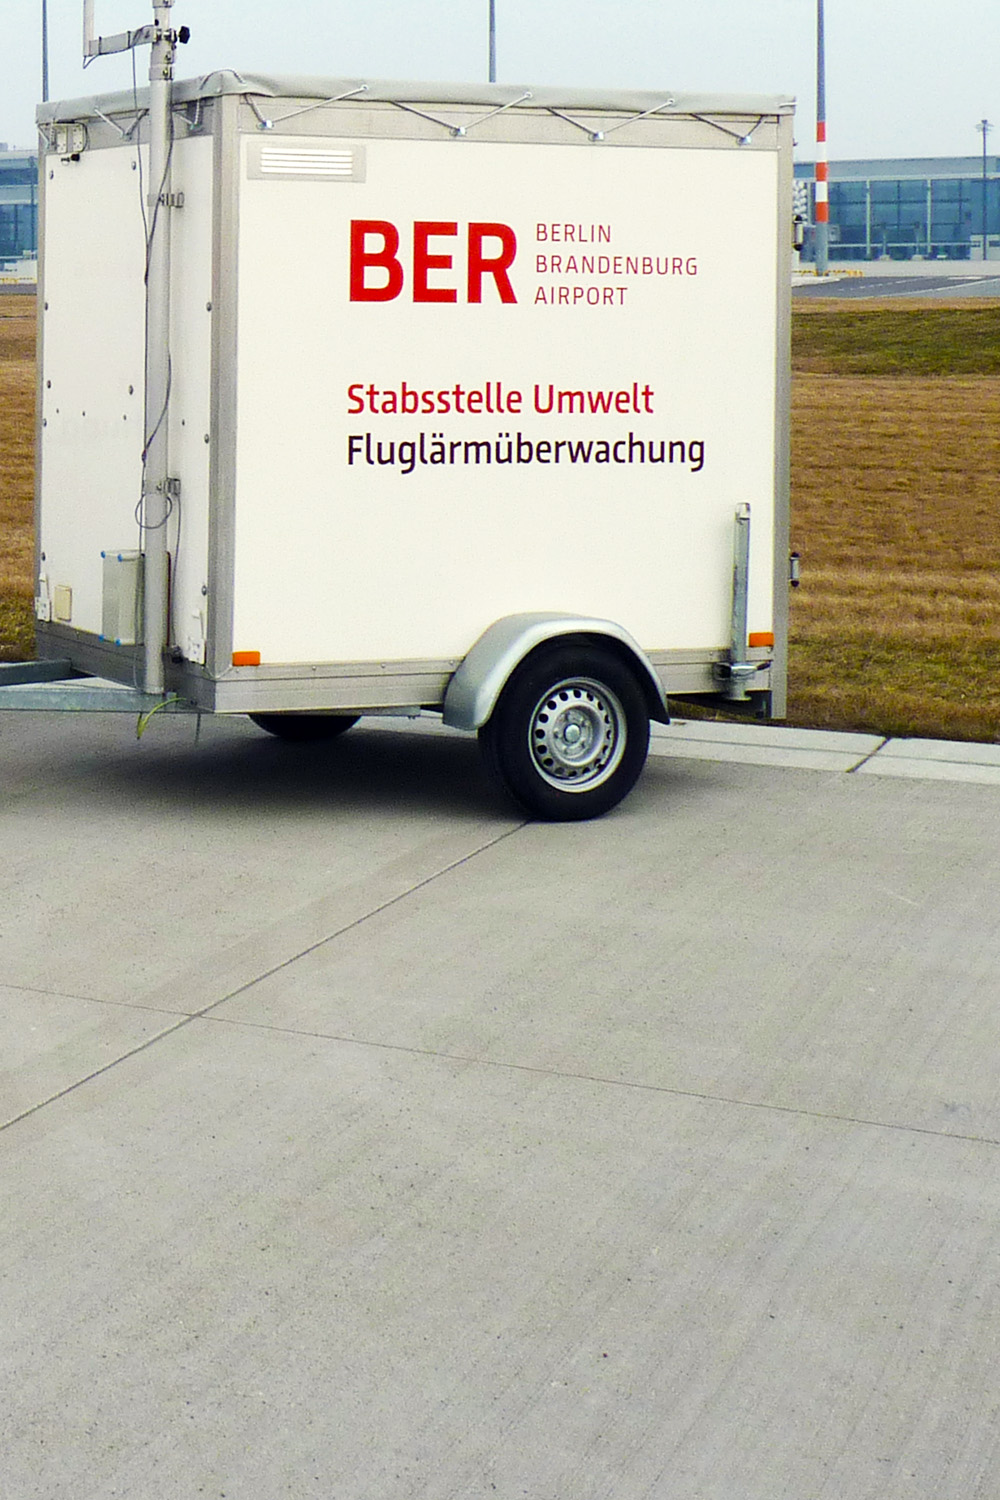 FBB aircraft noise measurement trailer